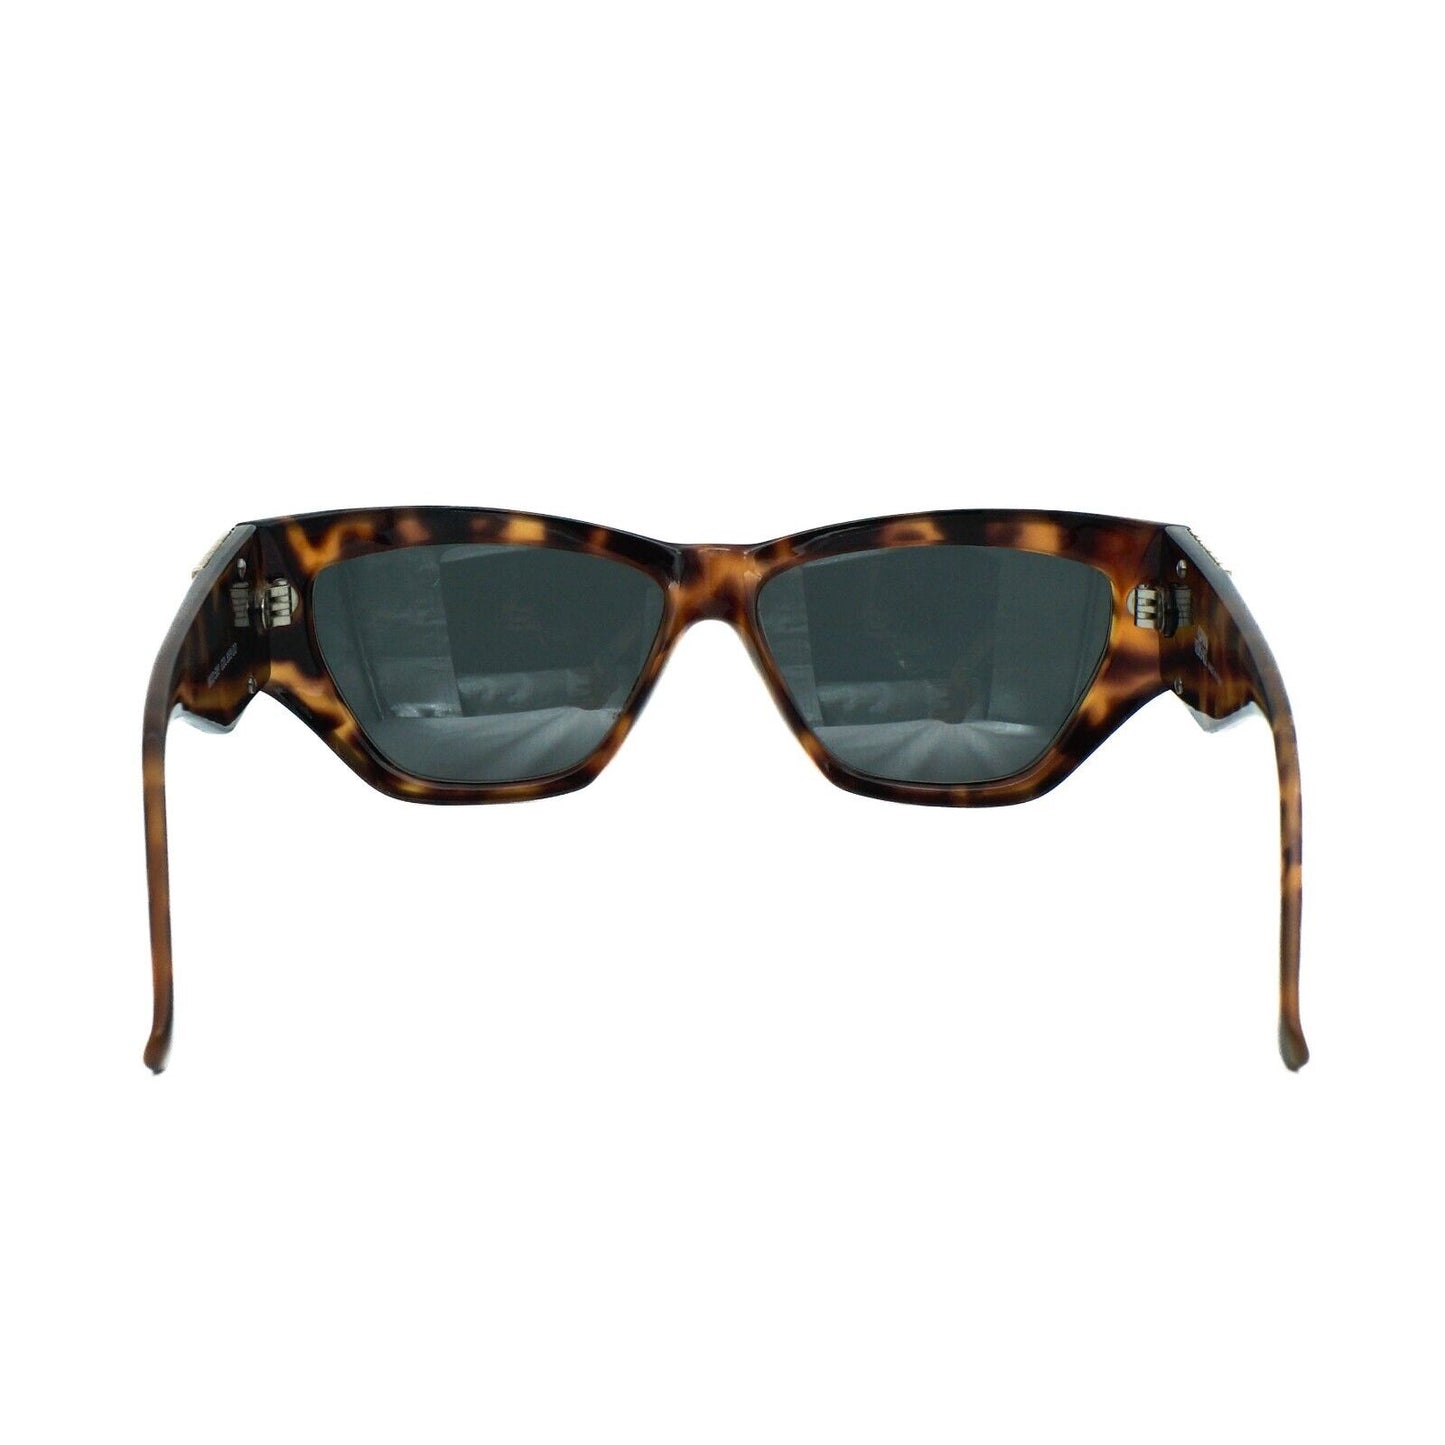 GIANNI VERSACE S89 Havana Brown Medusa Sunglasses VIntage 90s